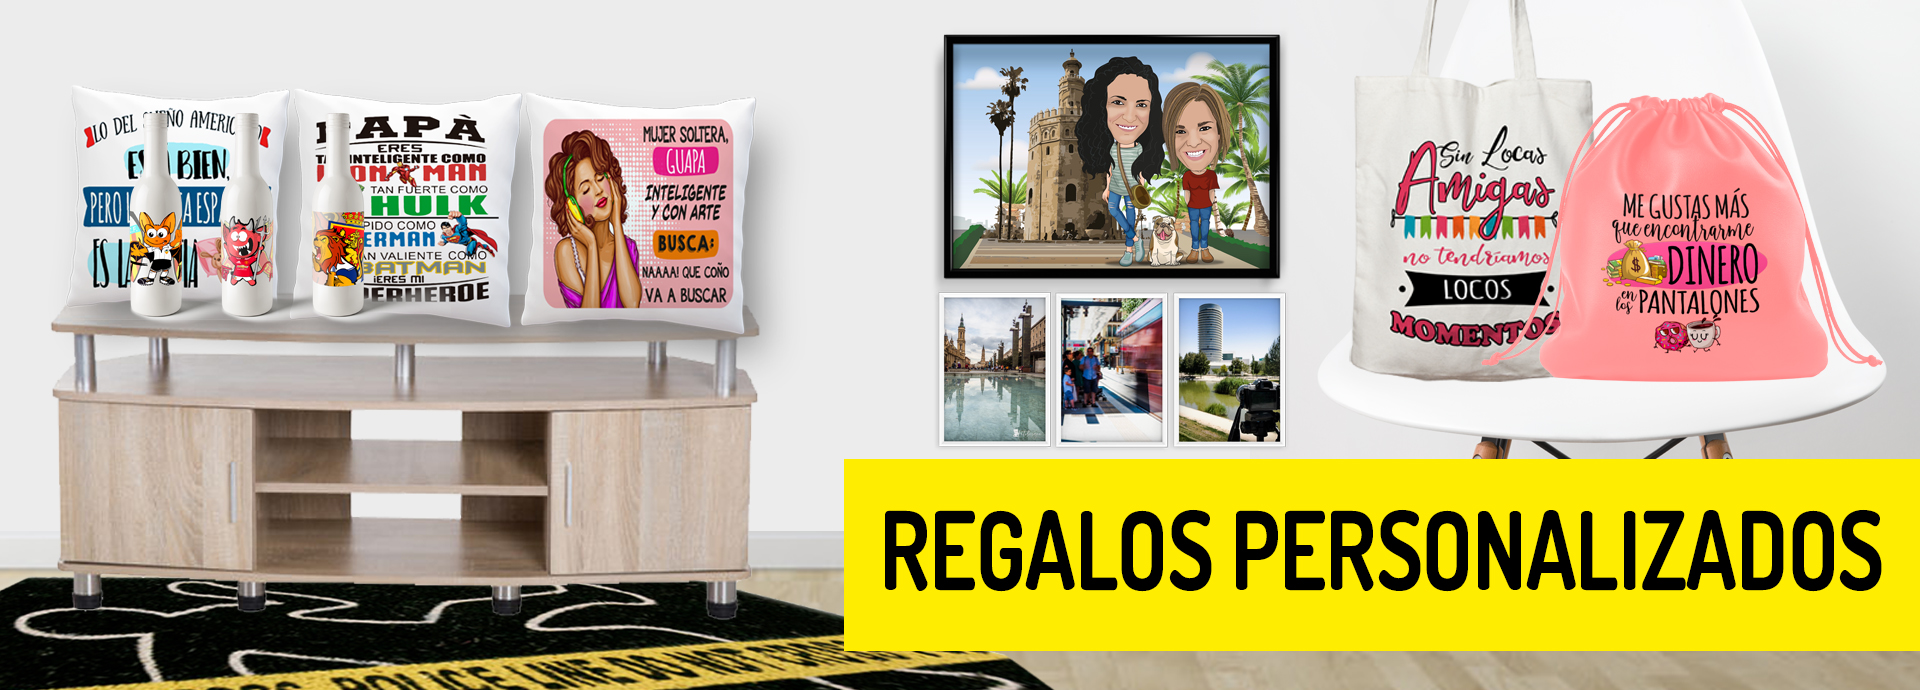 MUNDO DIGITAL ACTUR: Copisteria/Imprenta economica en Zaragoza - Regalos  personalizados